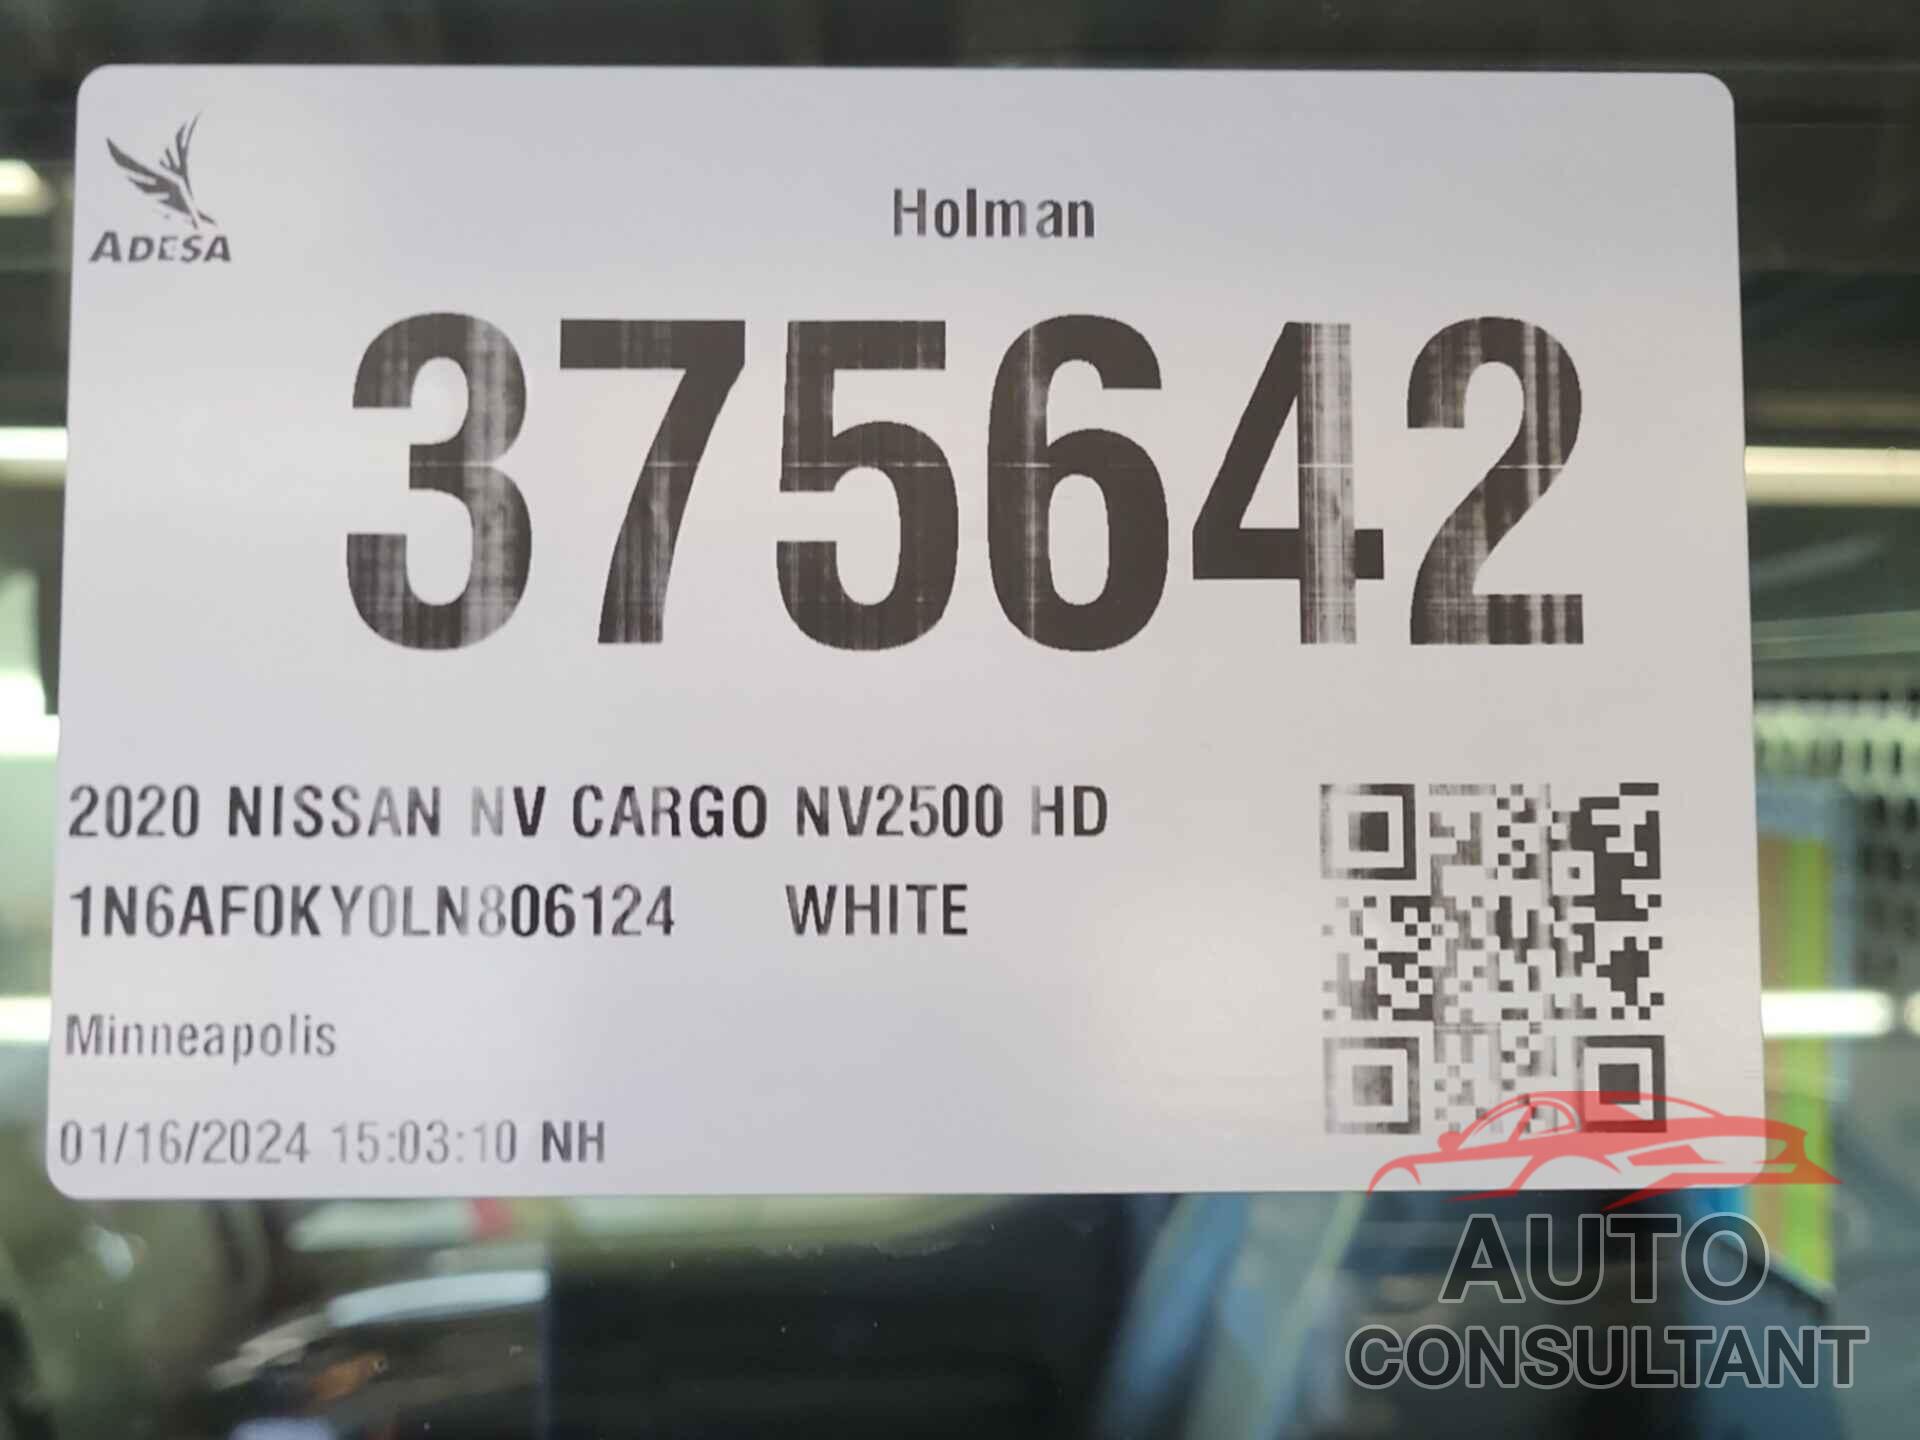 NISSAN NV CARGO NV2500 HD 2020 - 1N6AF0KY0LN806124